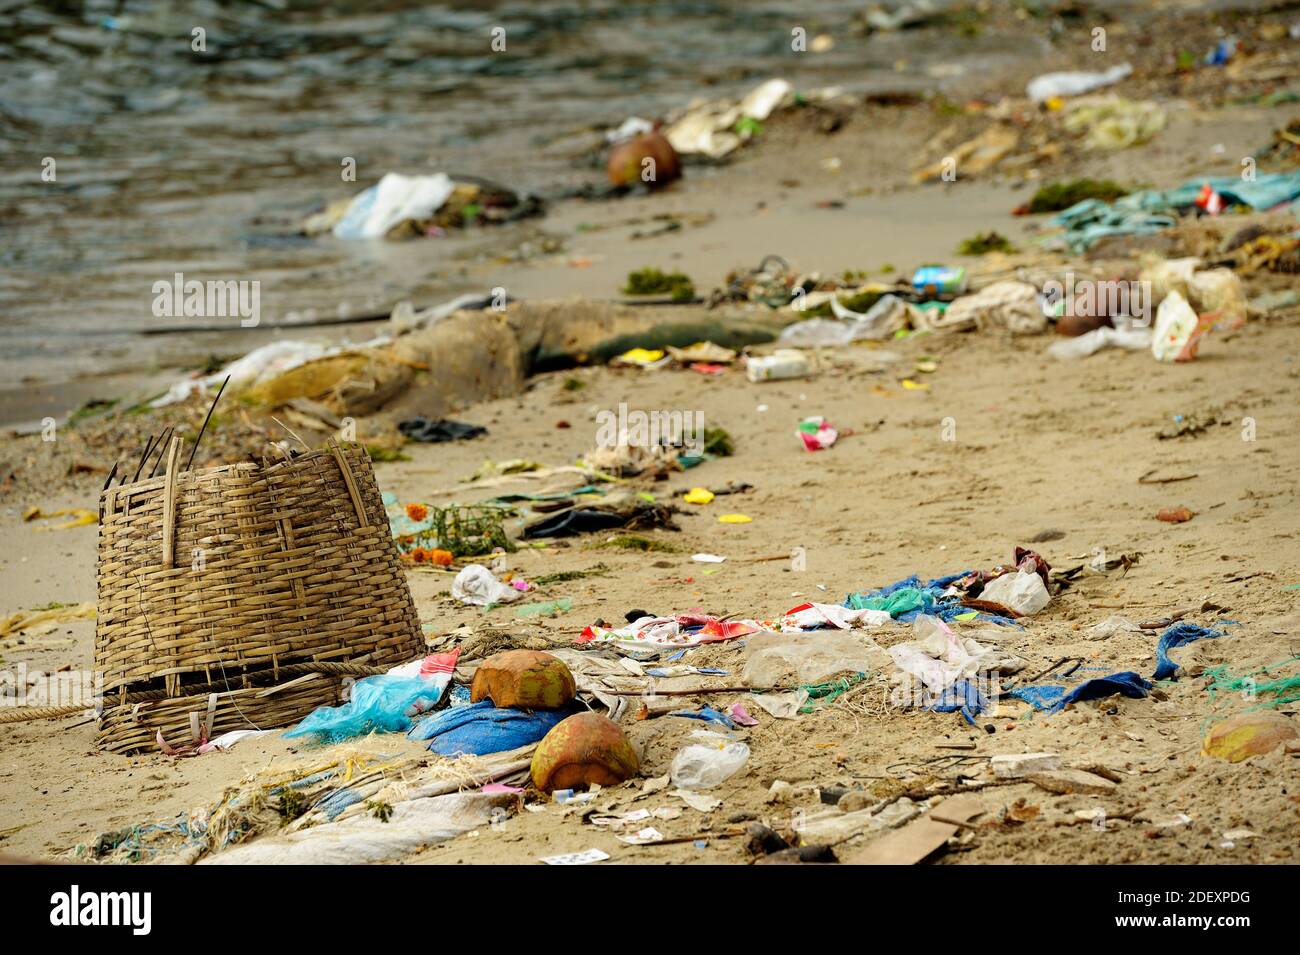 Los objetos arrojados por el mar varados en una playa de arena en Vietnam. Cesta trenzada en primer plano, bolsas de plástico, basura y el mar de fondo. Foto de stock